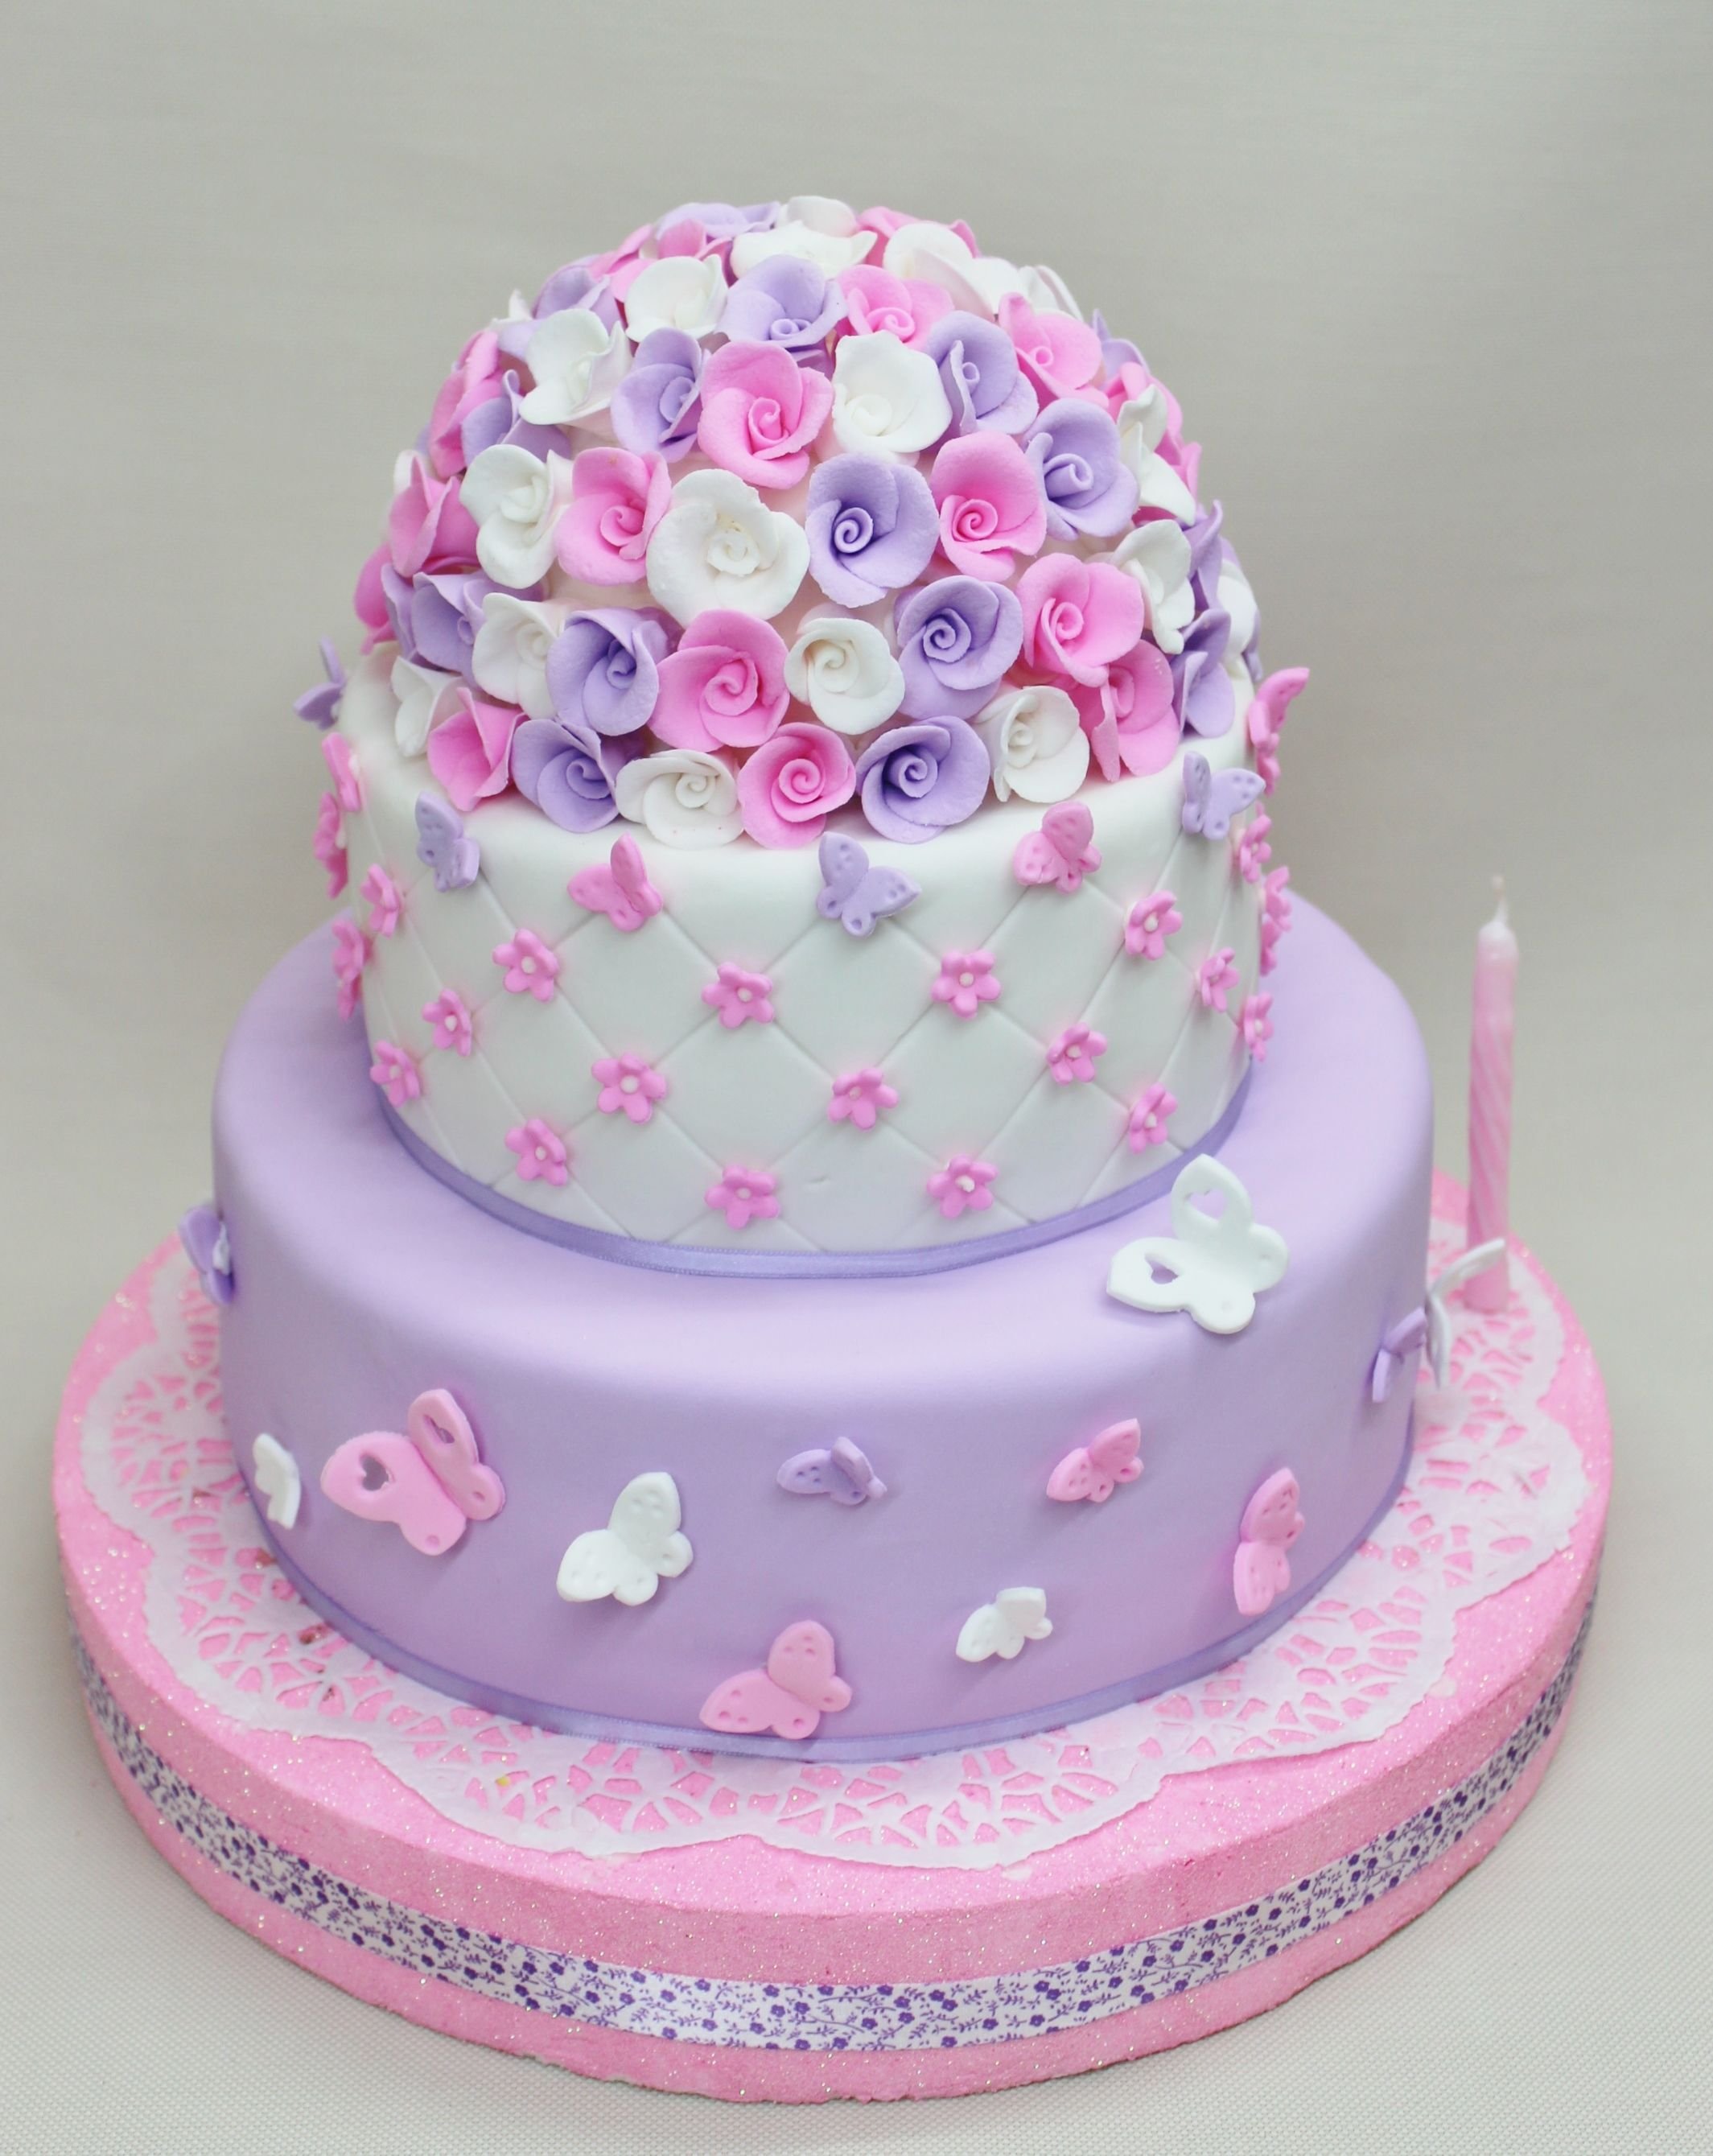 Красивые торты на 10 лет. Торт девочка. Торт детский девочке. Красивый детский торт для девочки. Торт на день рождениядеыочке.